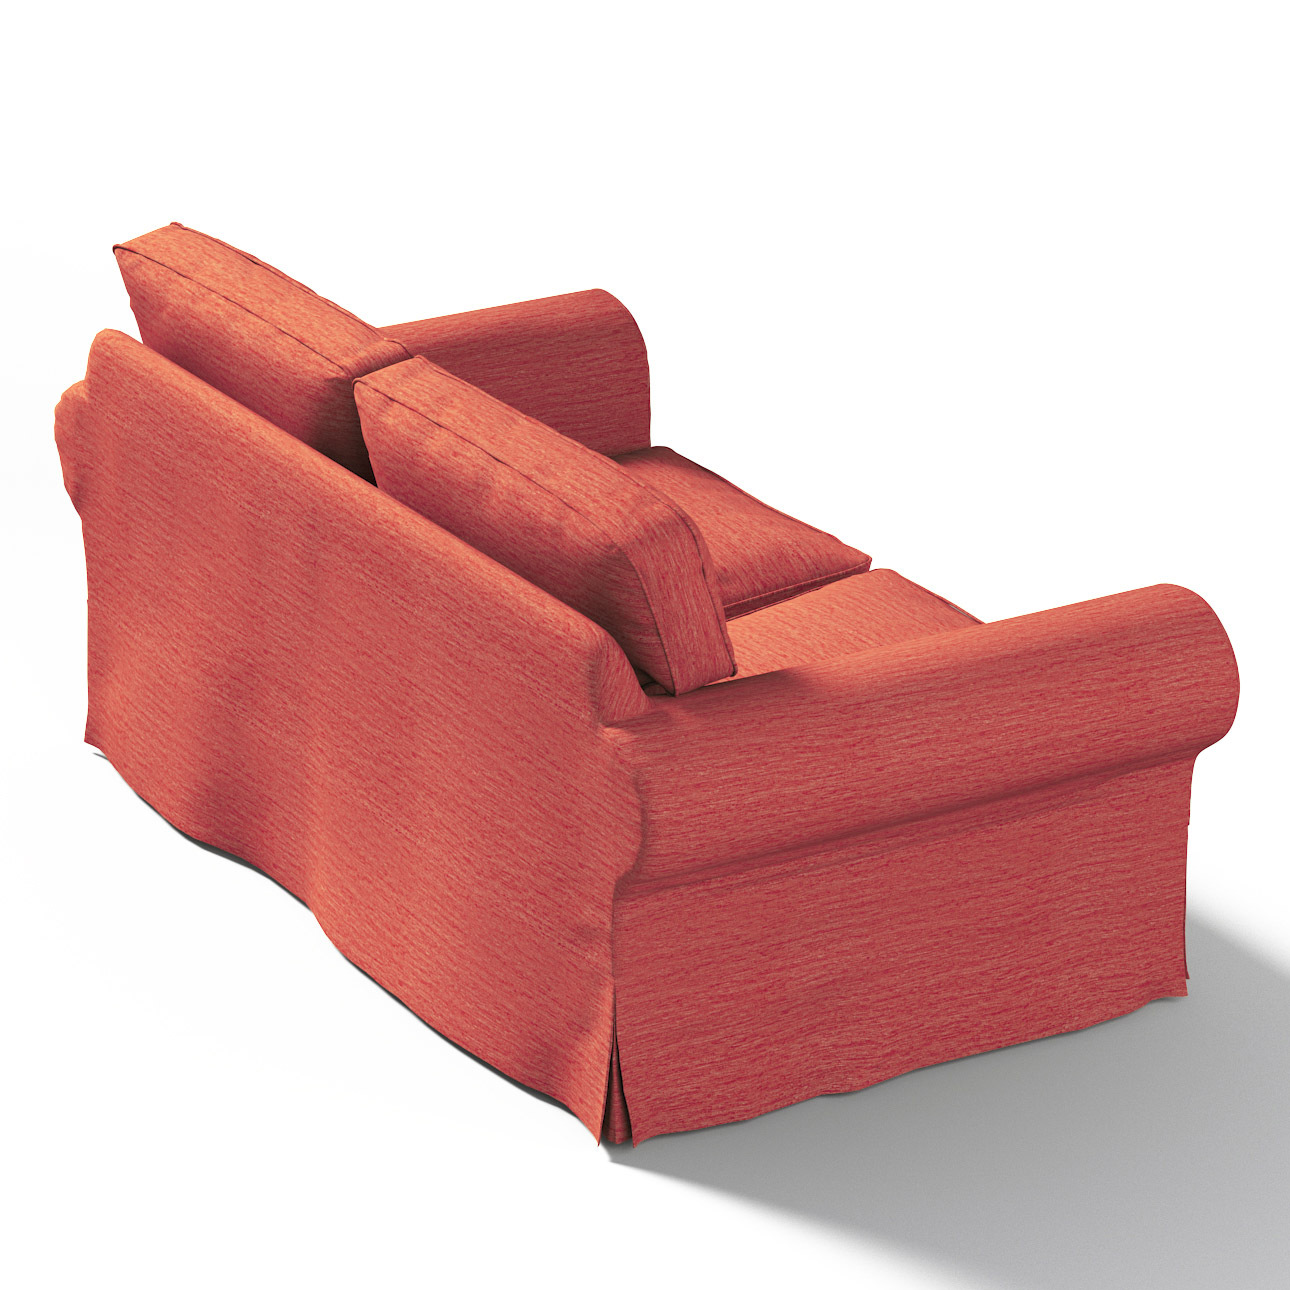 Bezug für Ektorp 2-Sitzer Sofa nicht ausklappbar, ziegelrot, Sofabezug für günstig online kaufen